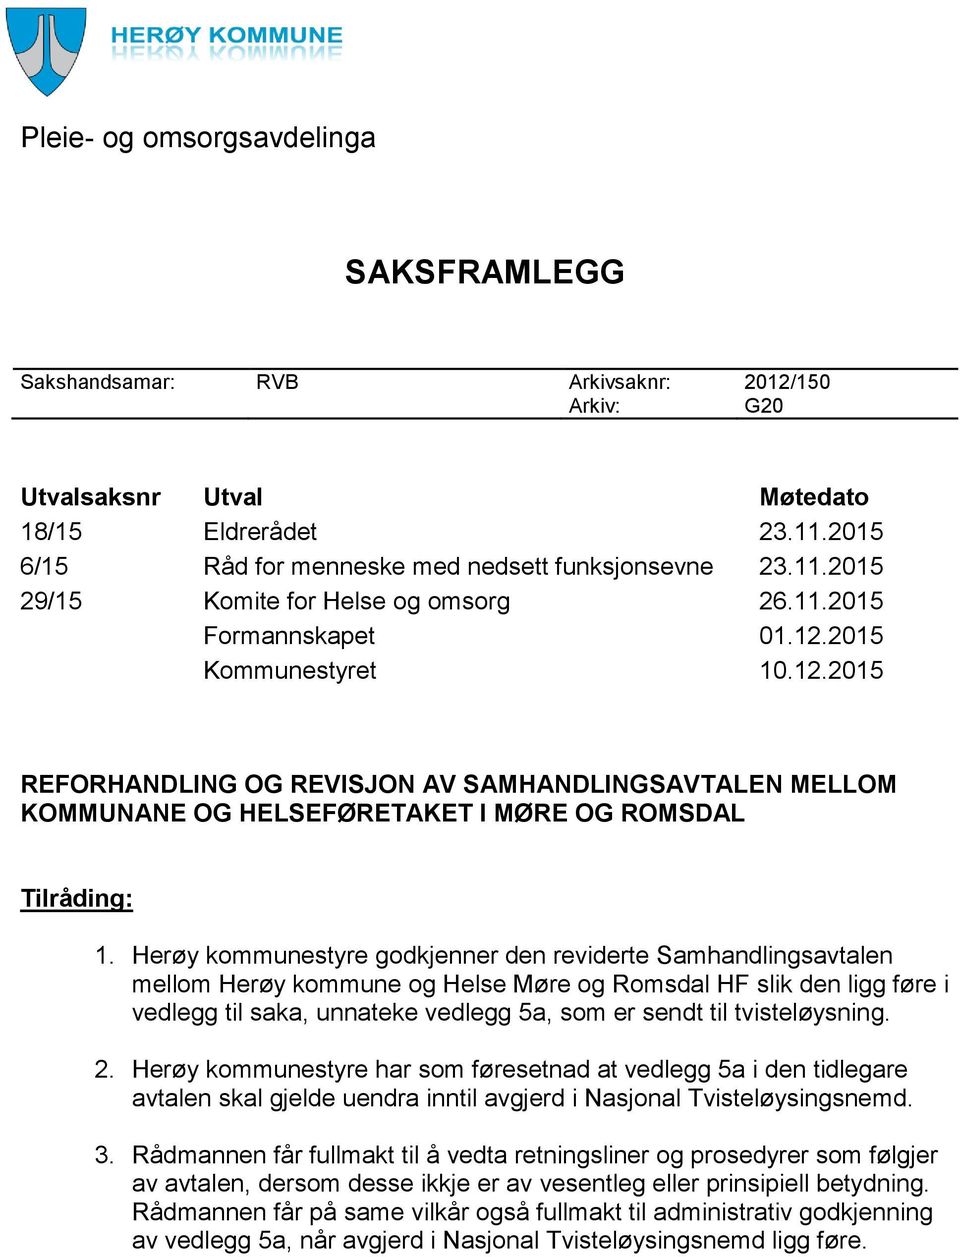 Herøy kommunestyre godkjenner den reviderte Samhandlingsavtalen mellom Herøy kommune og Helse Møre og Romsdal HF slik den ligg føre i vedlegg til saka, unnateke vedlegg 5a, som er sendt til